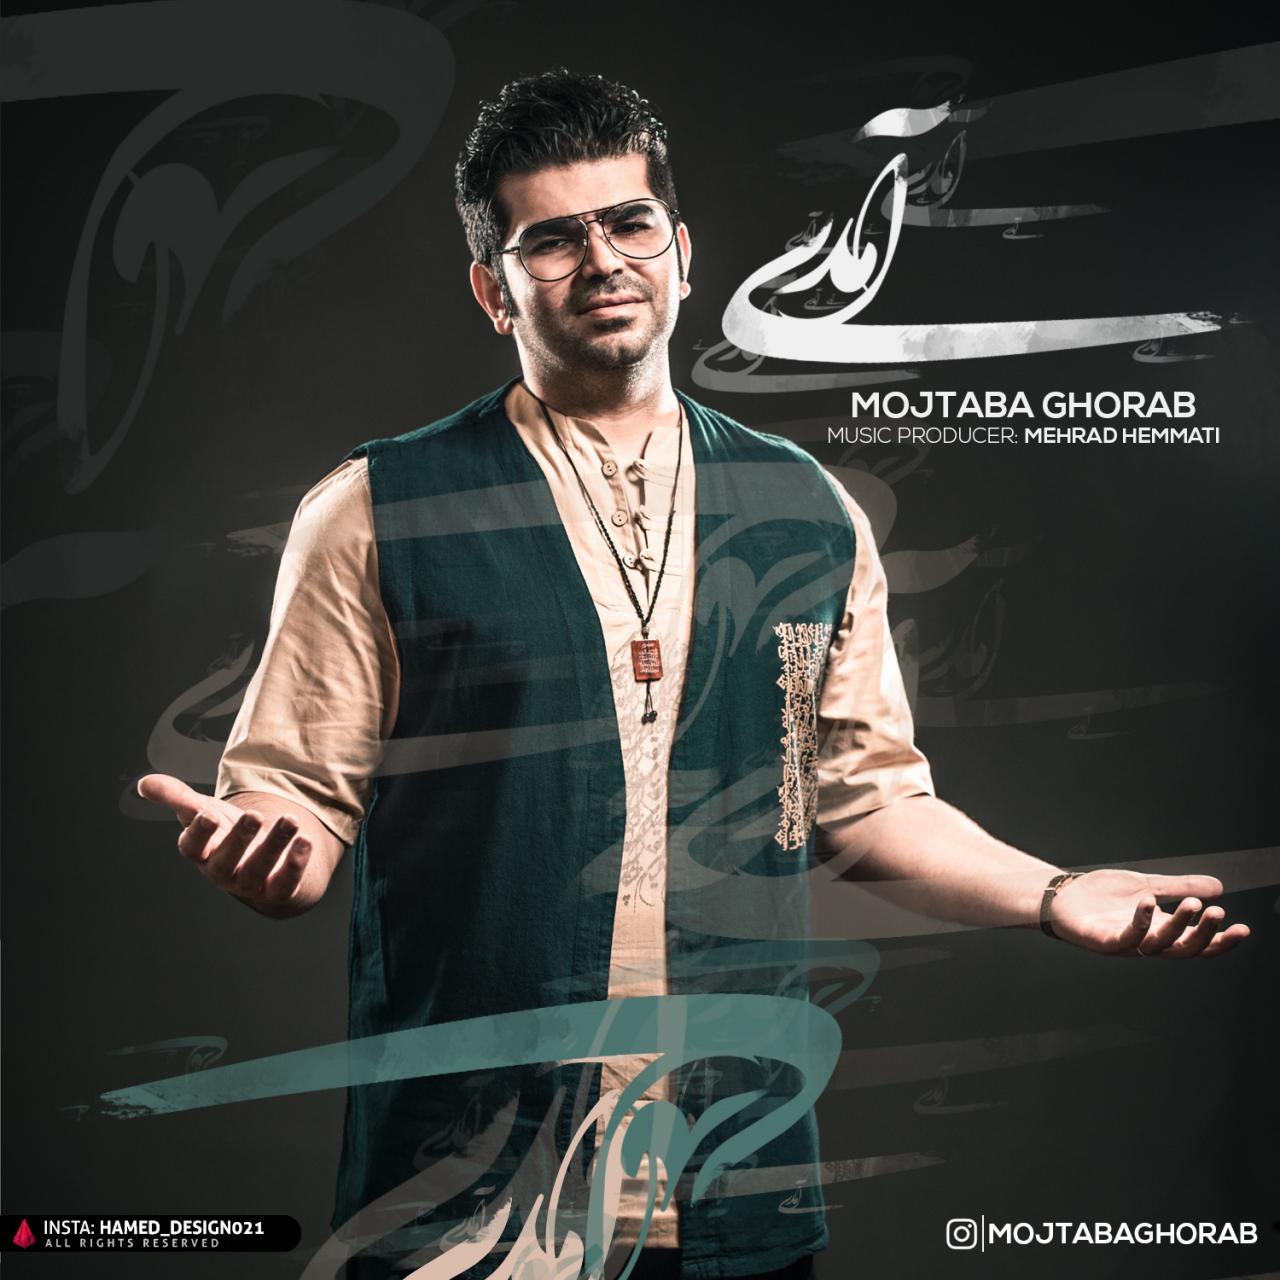  دانلود آهنگ جدید مجتبی غراب - آمدی | Download New Music By Mojtaba Ghorab - Amadi